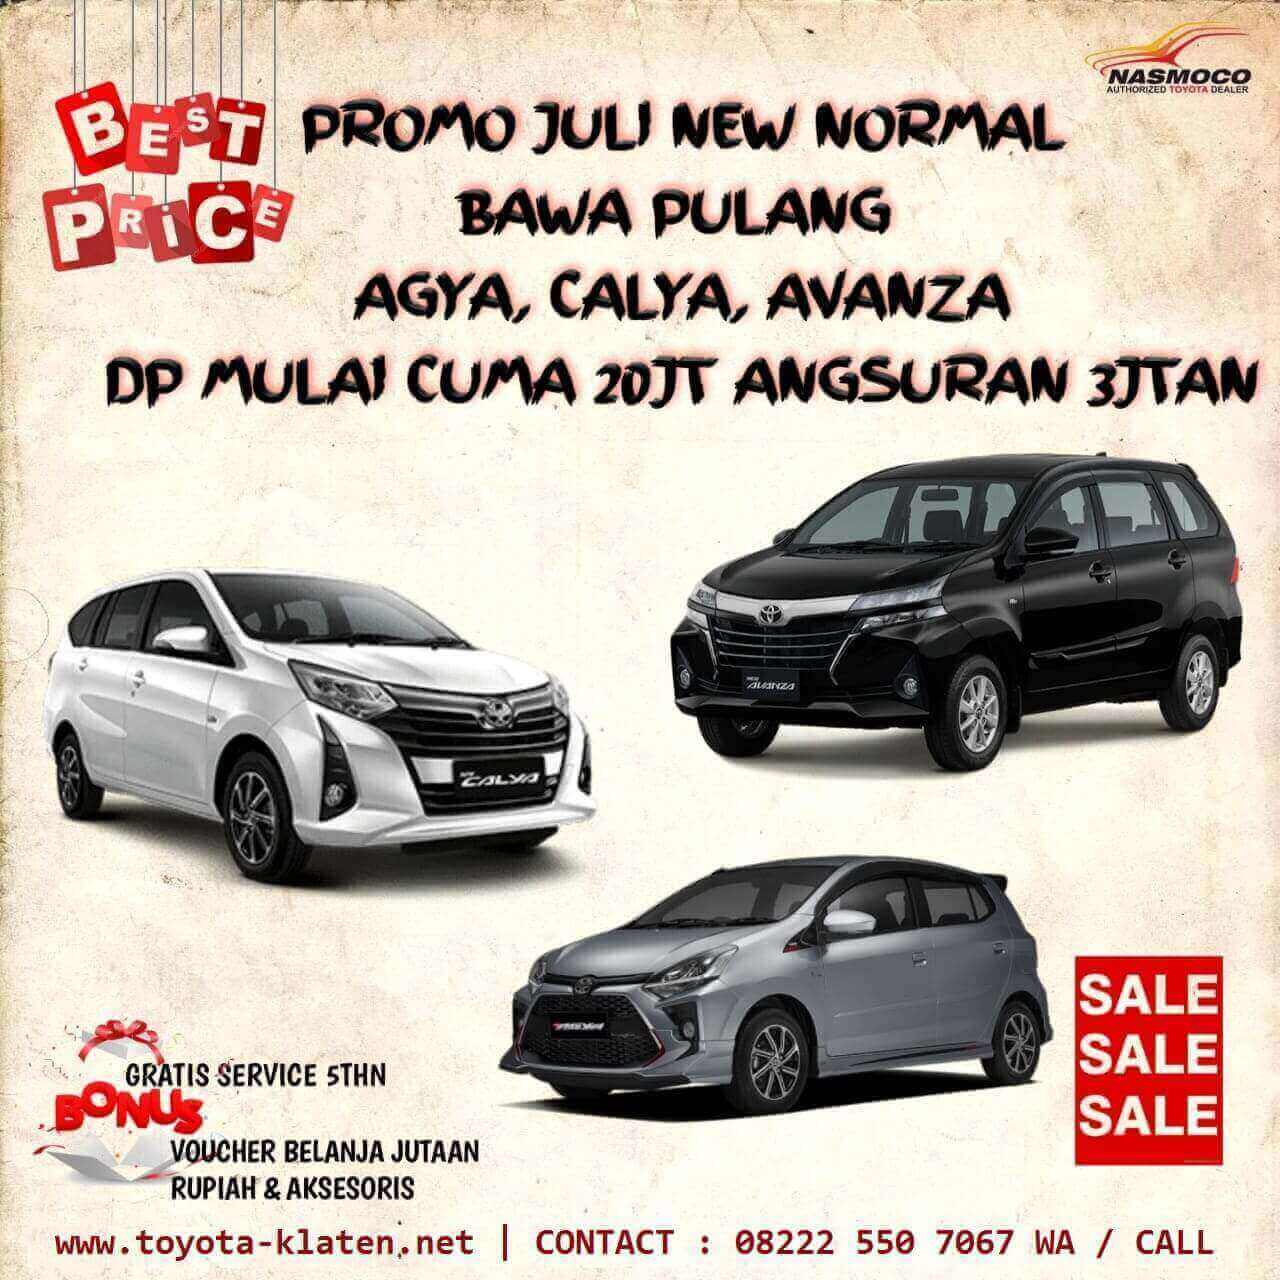 Promo Juli New Normal DP & Angsuran Murah Di Dealer Toyota Klaten